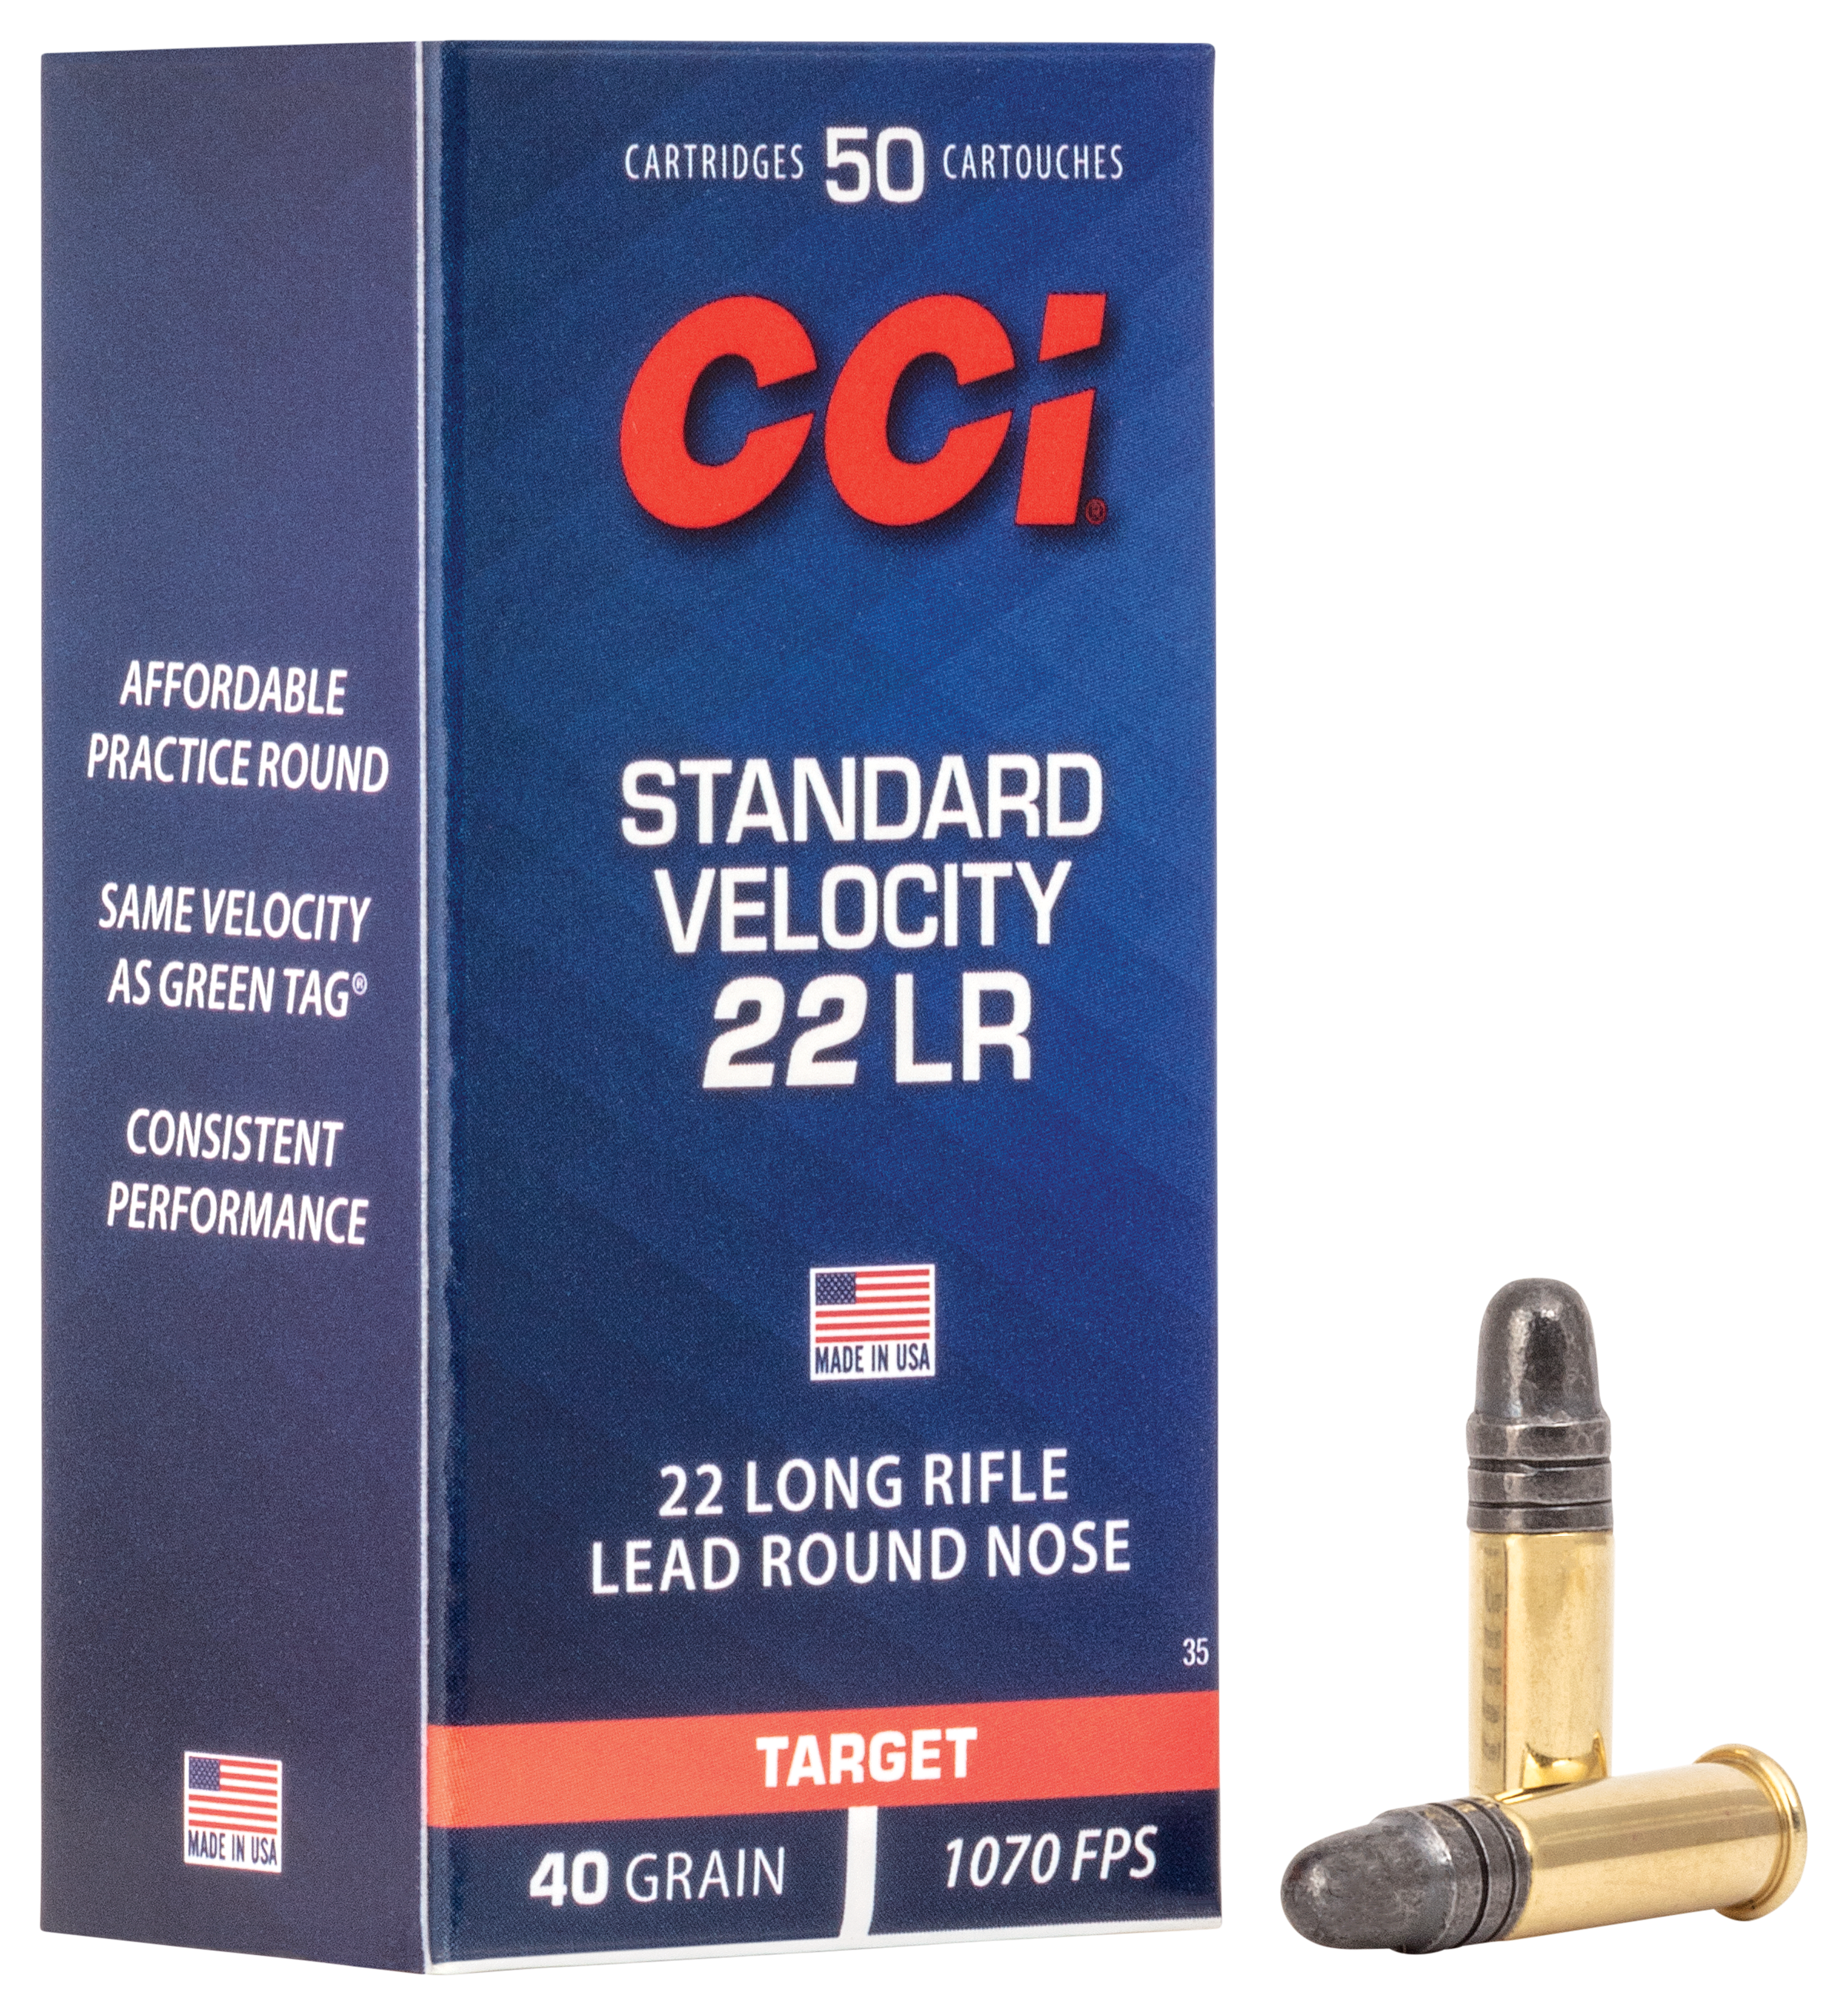 CCI Standard Velocity Rimfire Ammo - Lead Round Nose - 50 Rounds